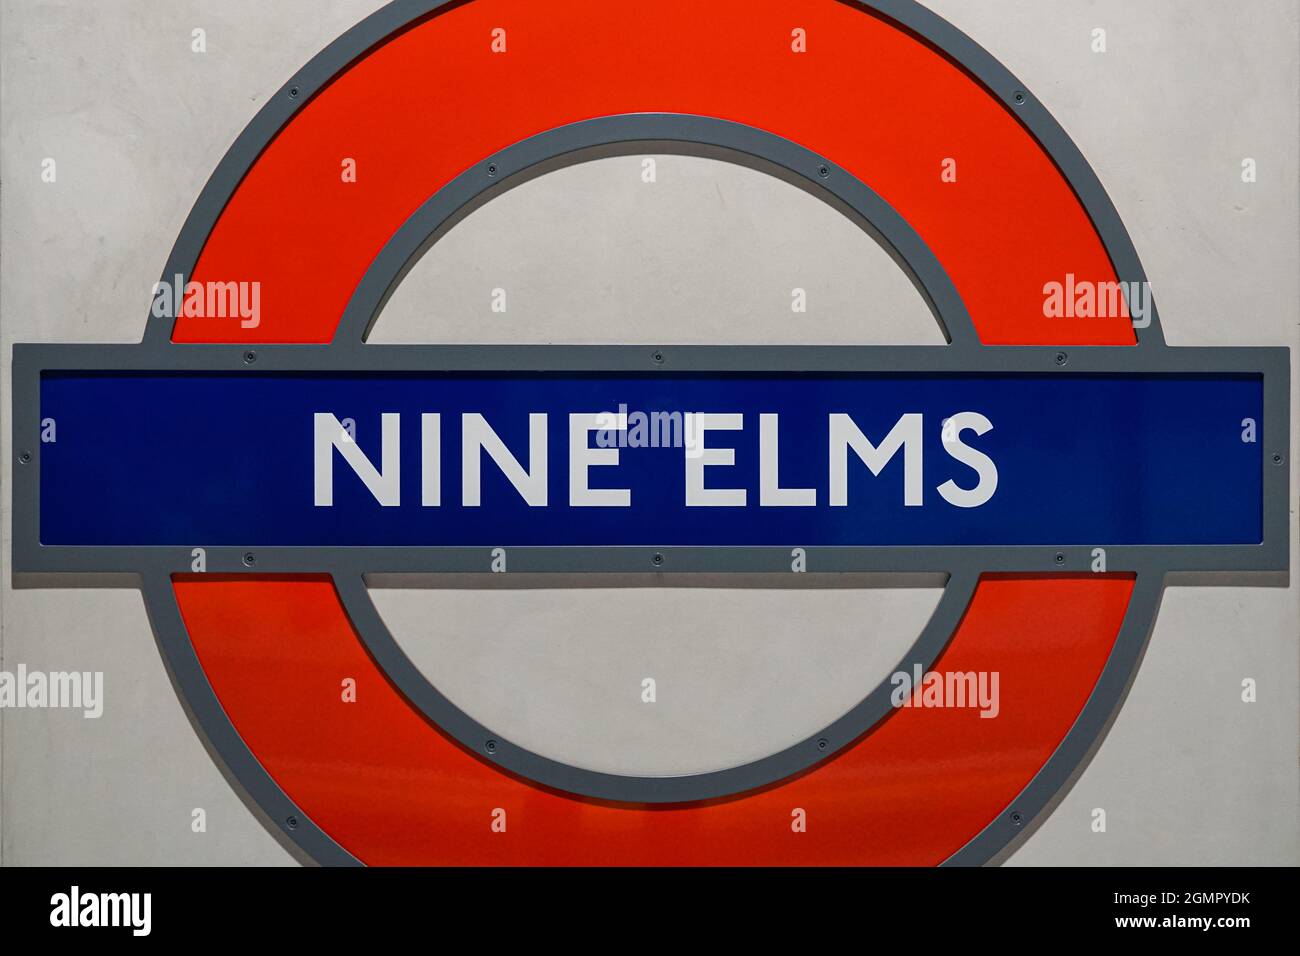 Nine Elms Underground, station de métro rond signe à Londres Angleterre Royaume-Uni Banque D'Images